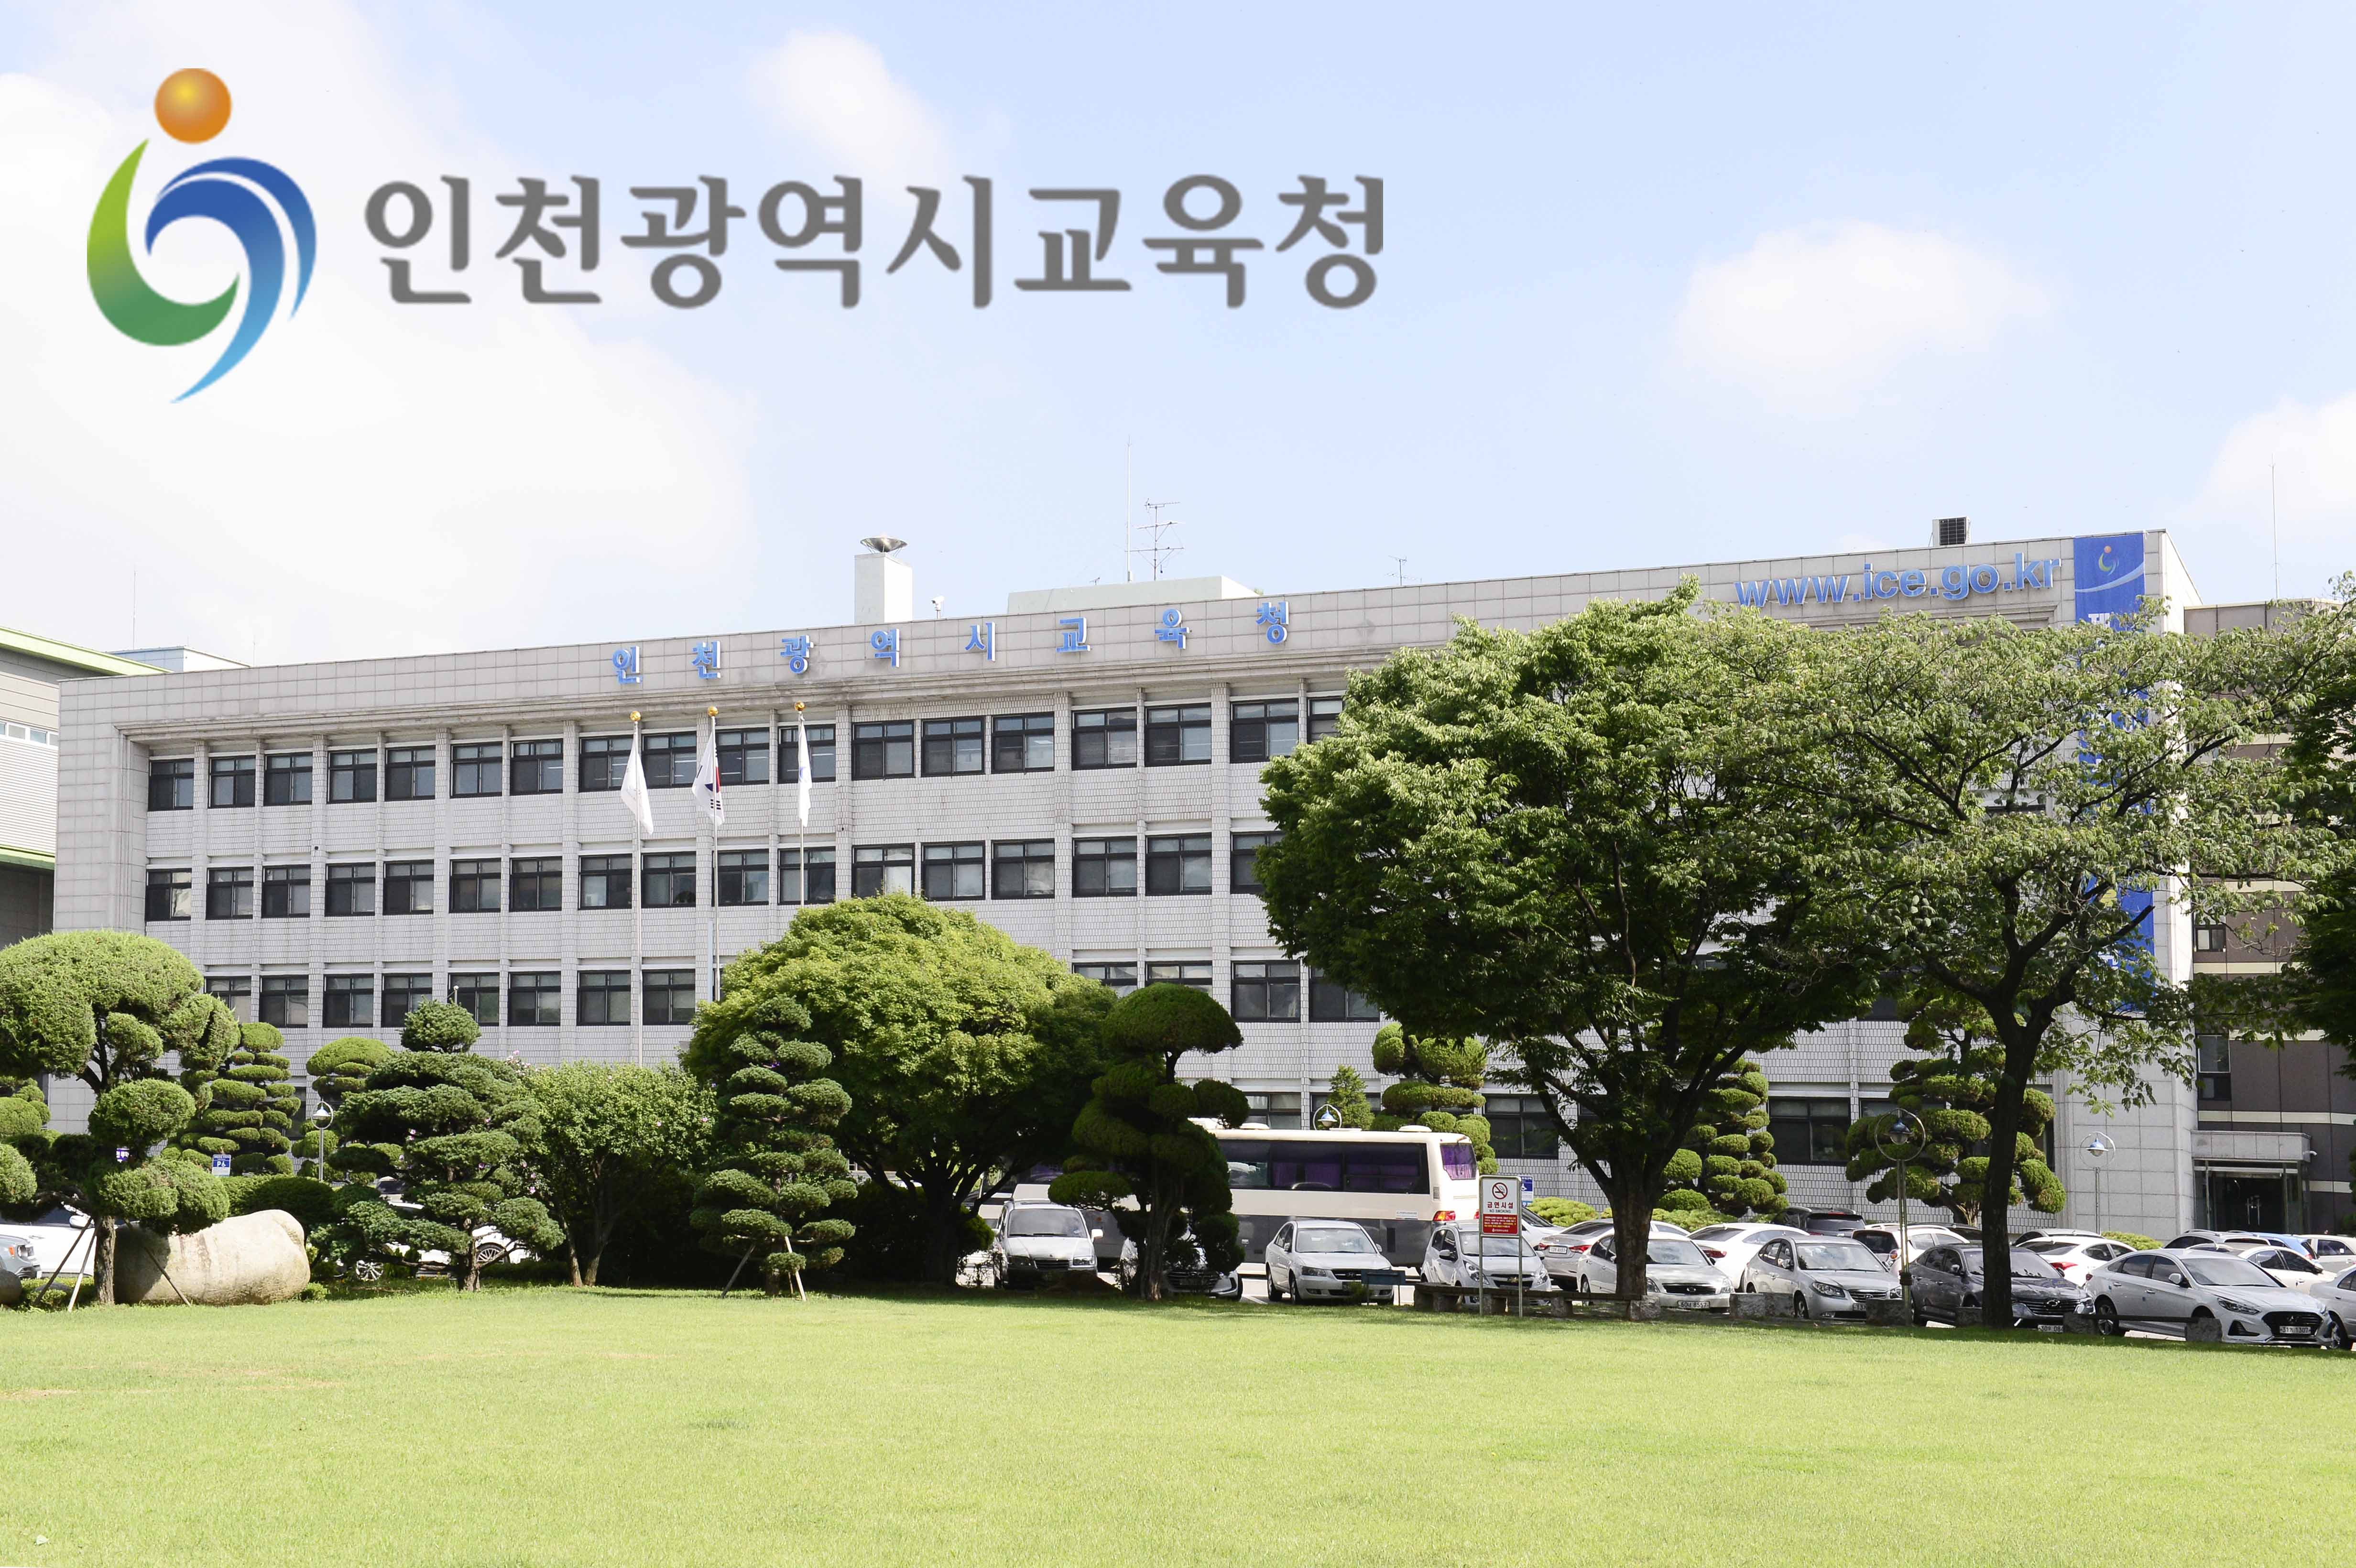 인천, 코로나-19 휴교 0%, 학생안전 이상무